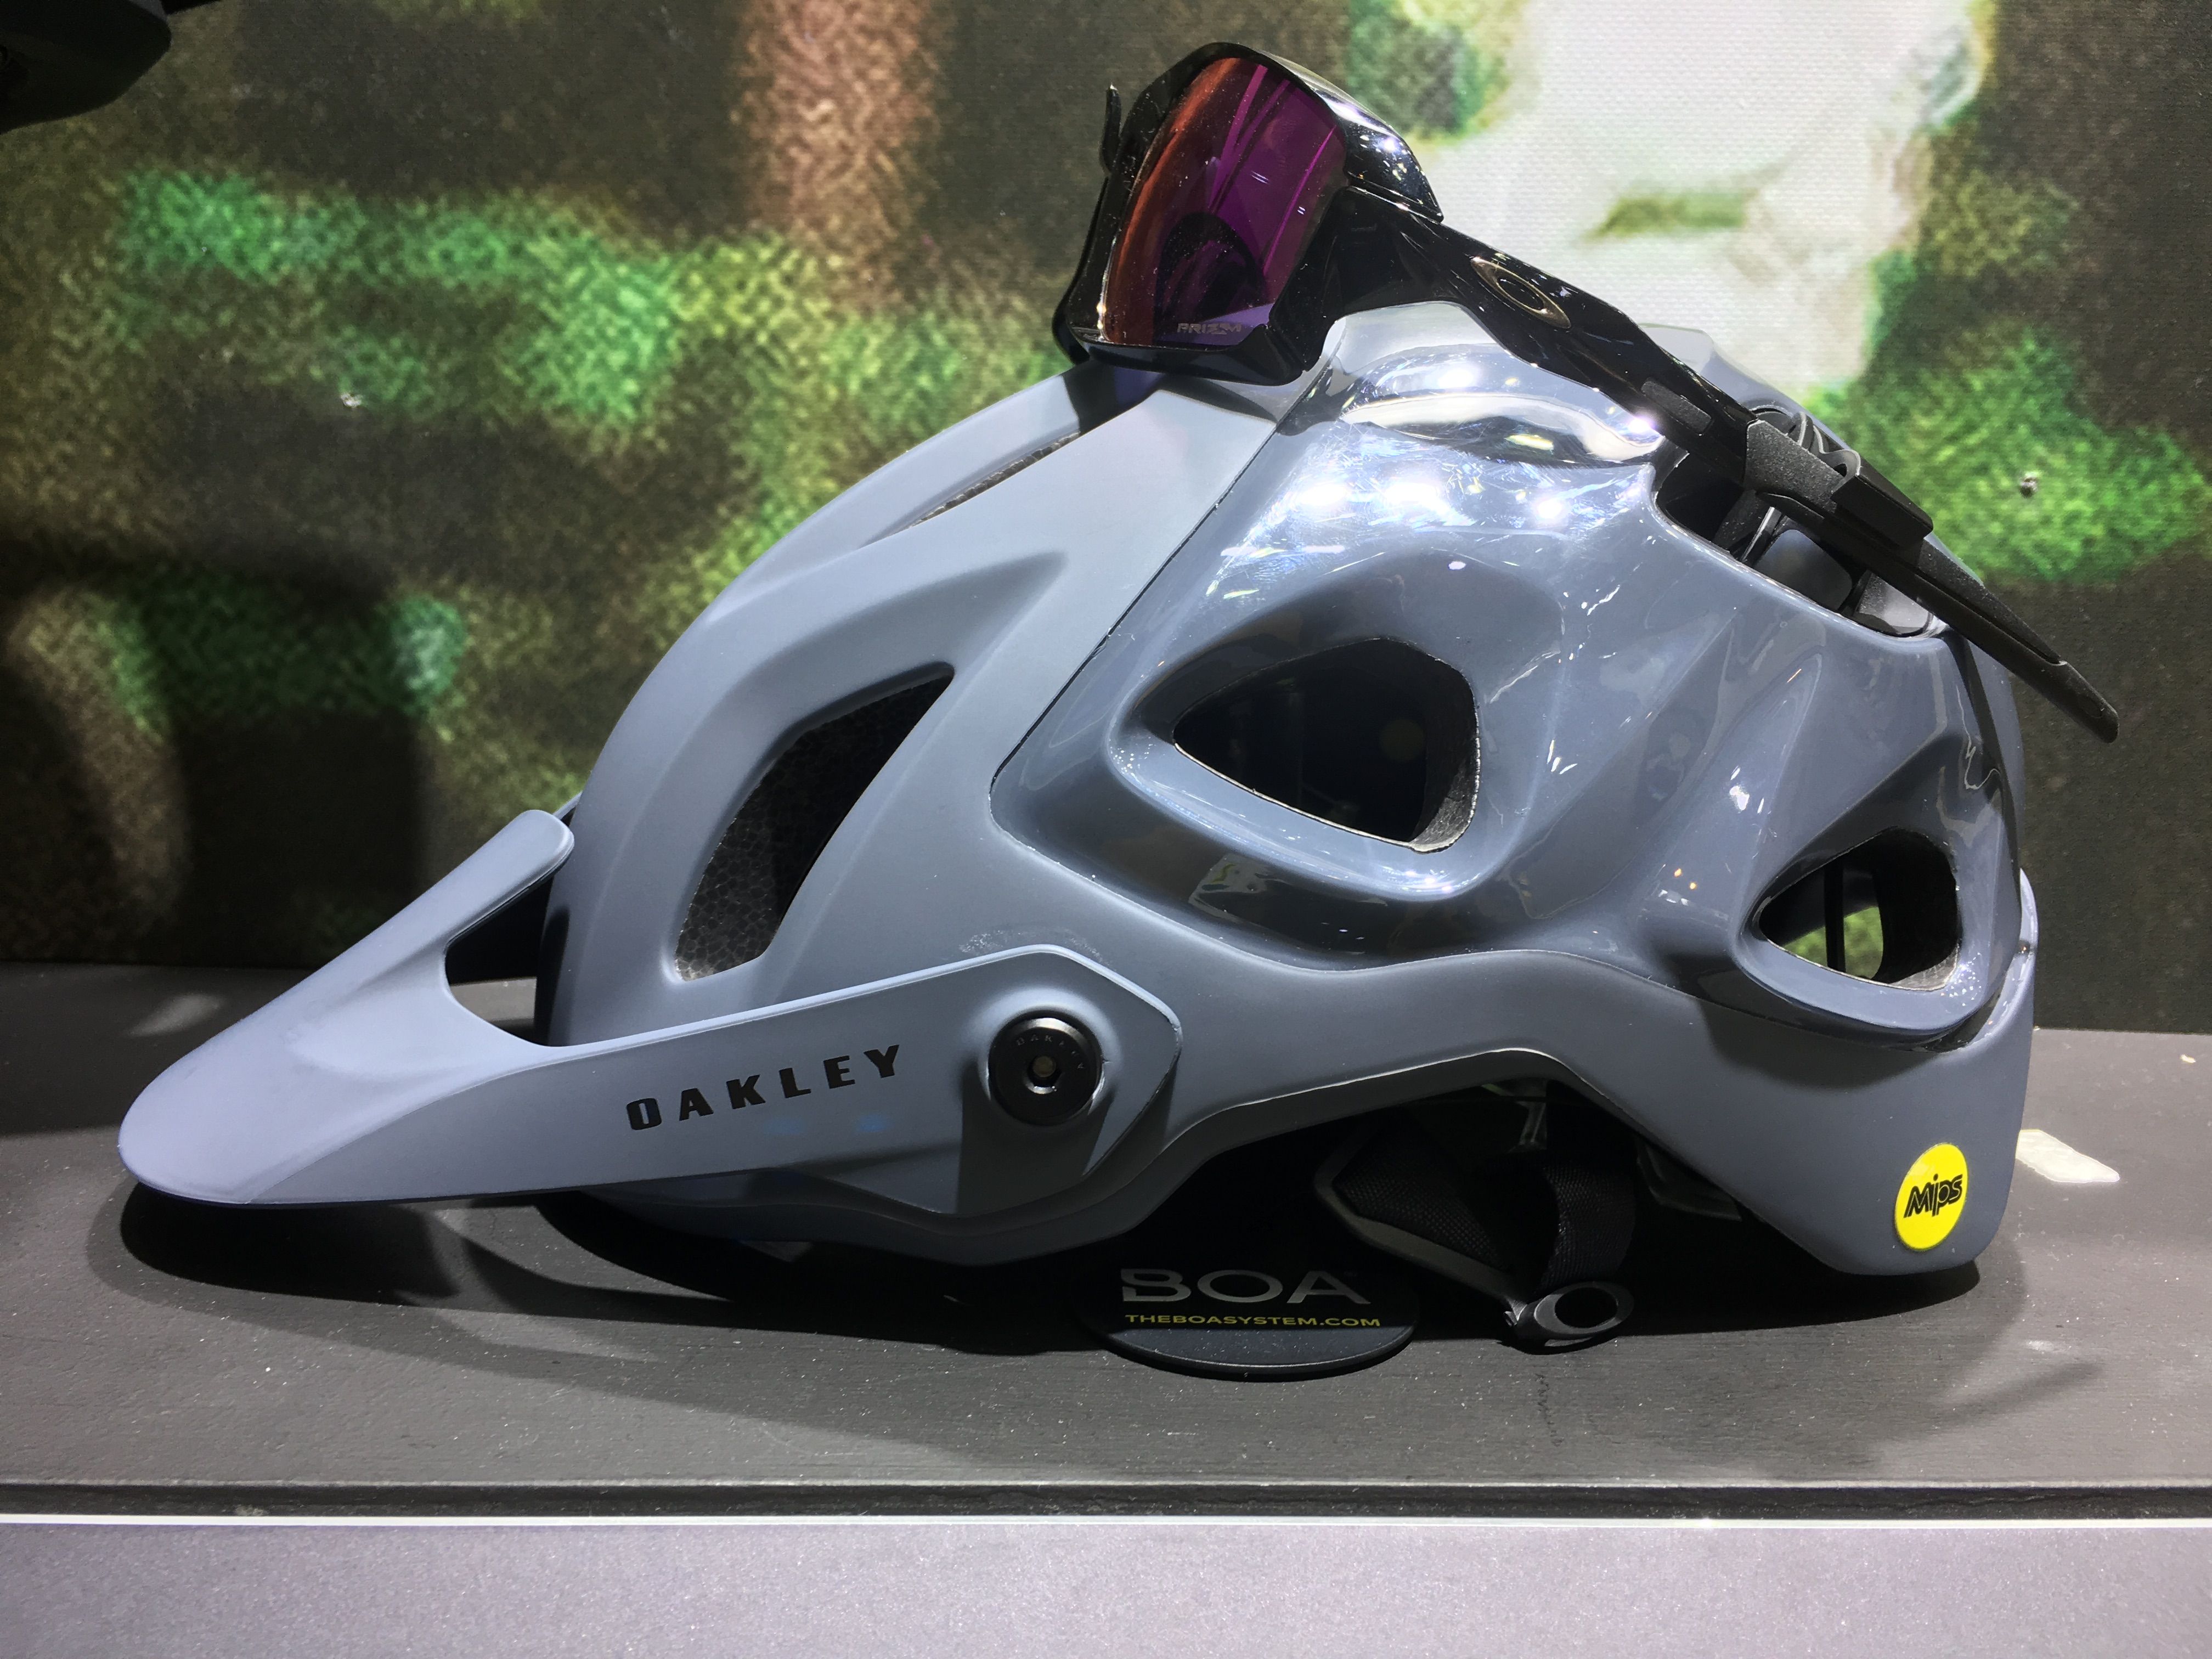 Oakley Mountain Bike Helmets and Apparel - Cycling Helmets & Gear